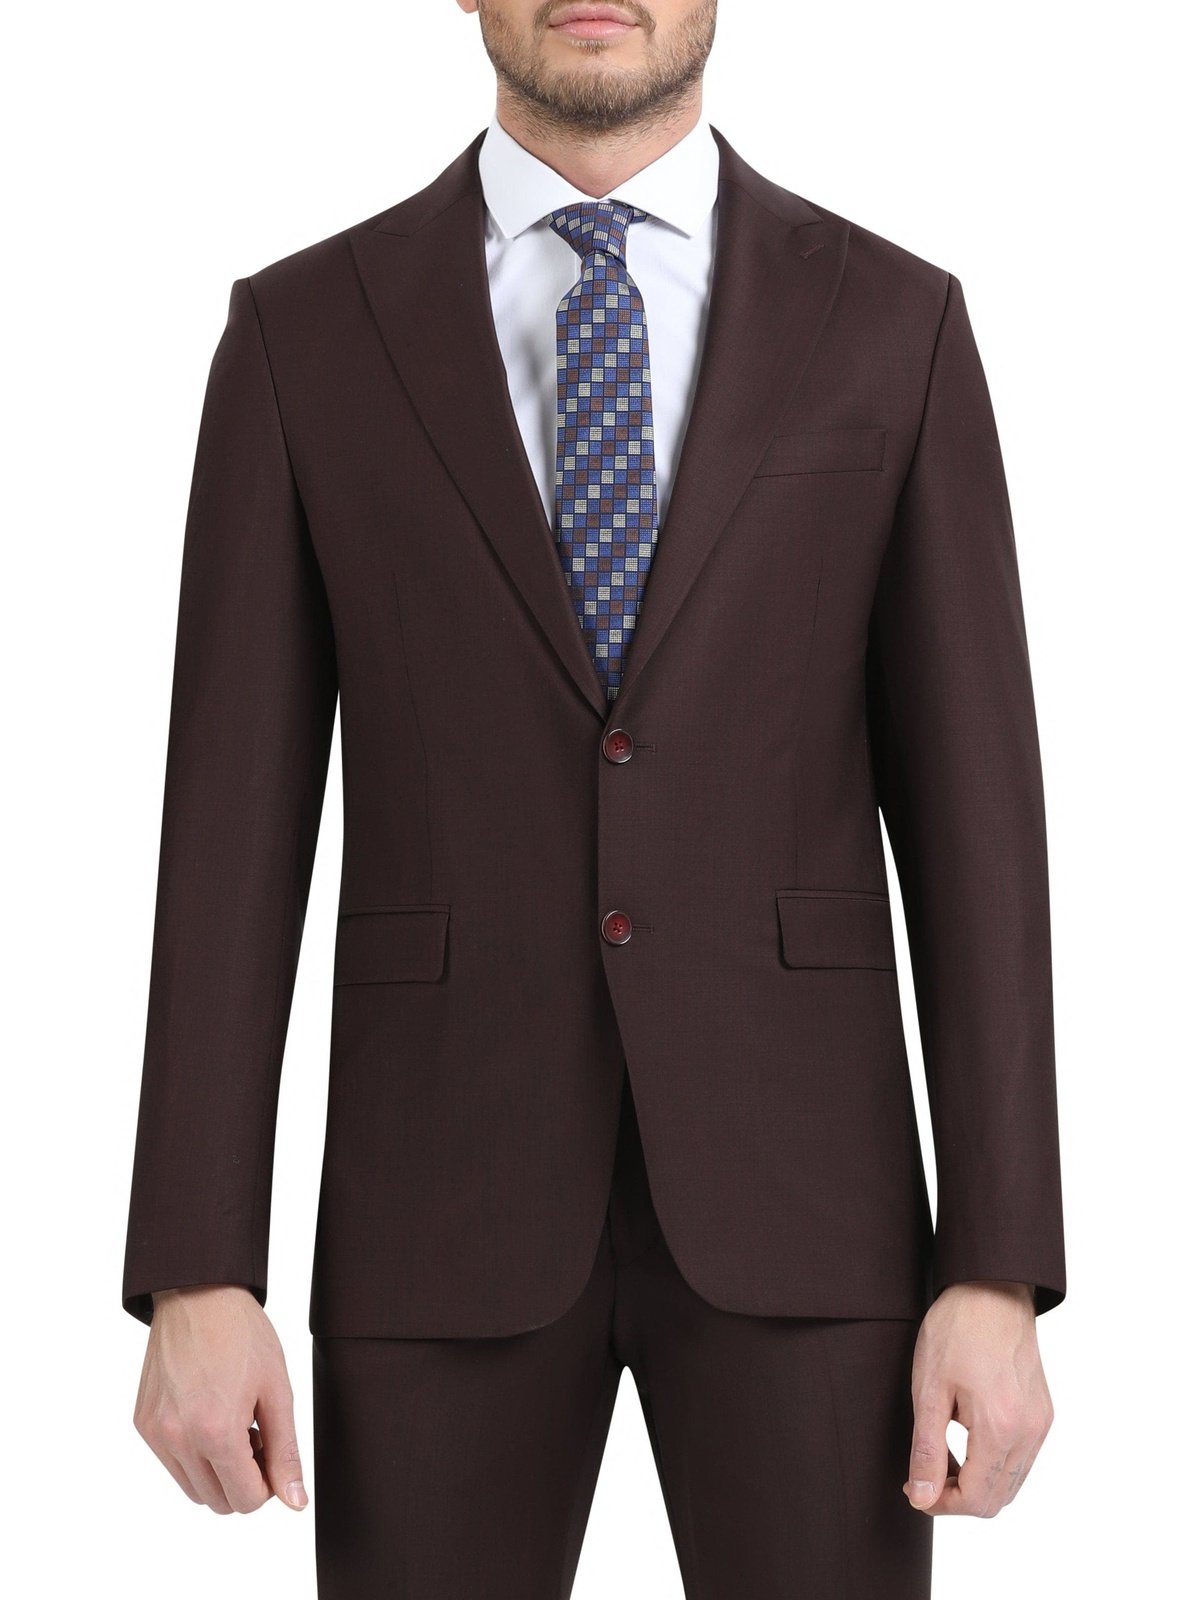 Di'nucci SUITS Di'nucci Solid Burgundy Peak Lapel Wool Suit